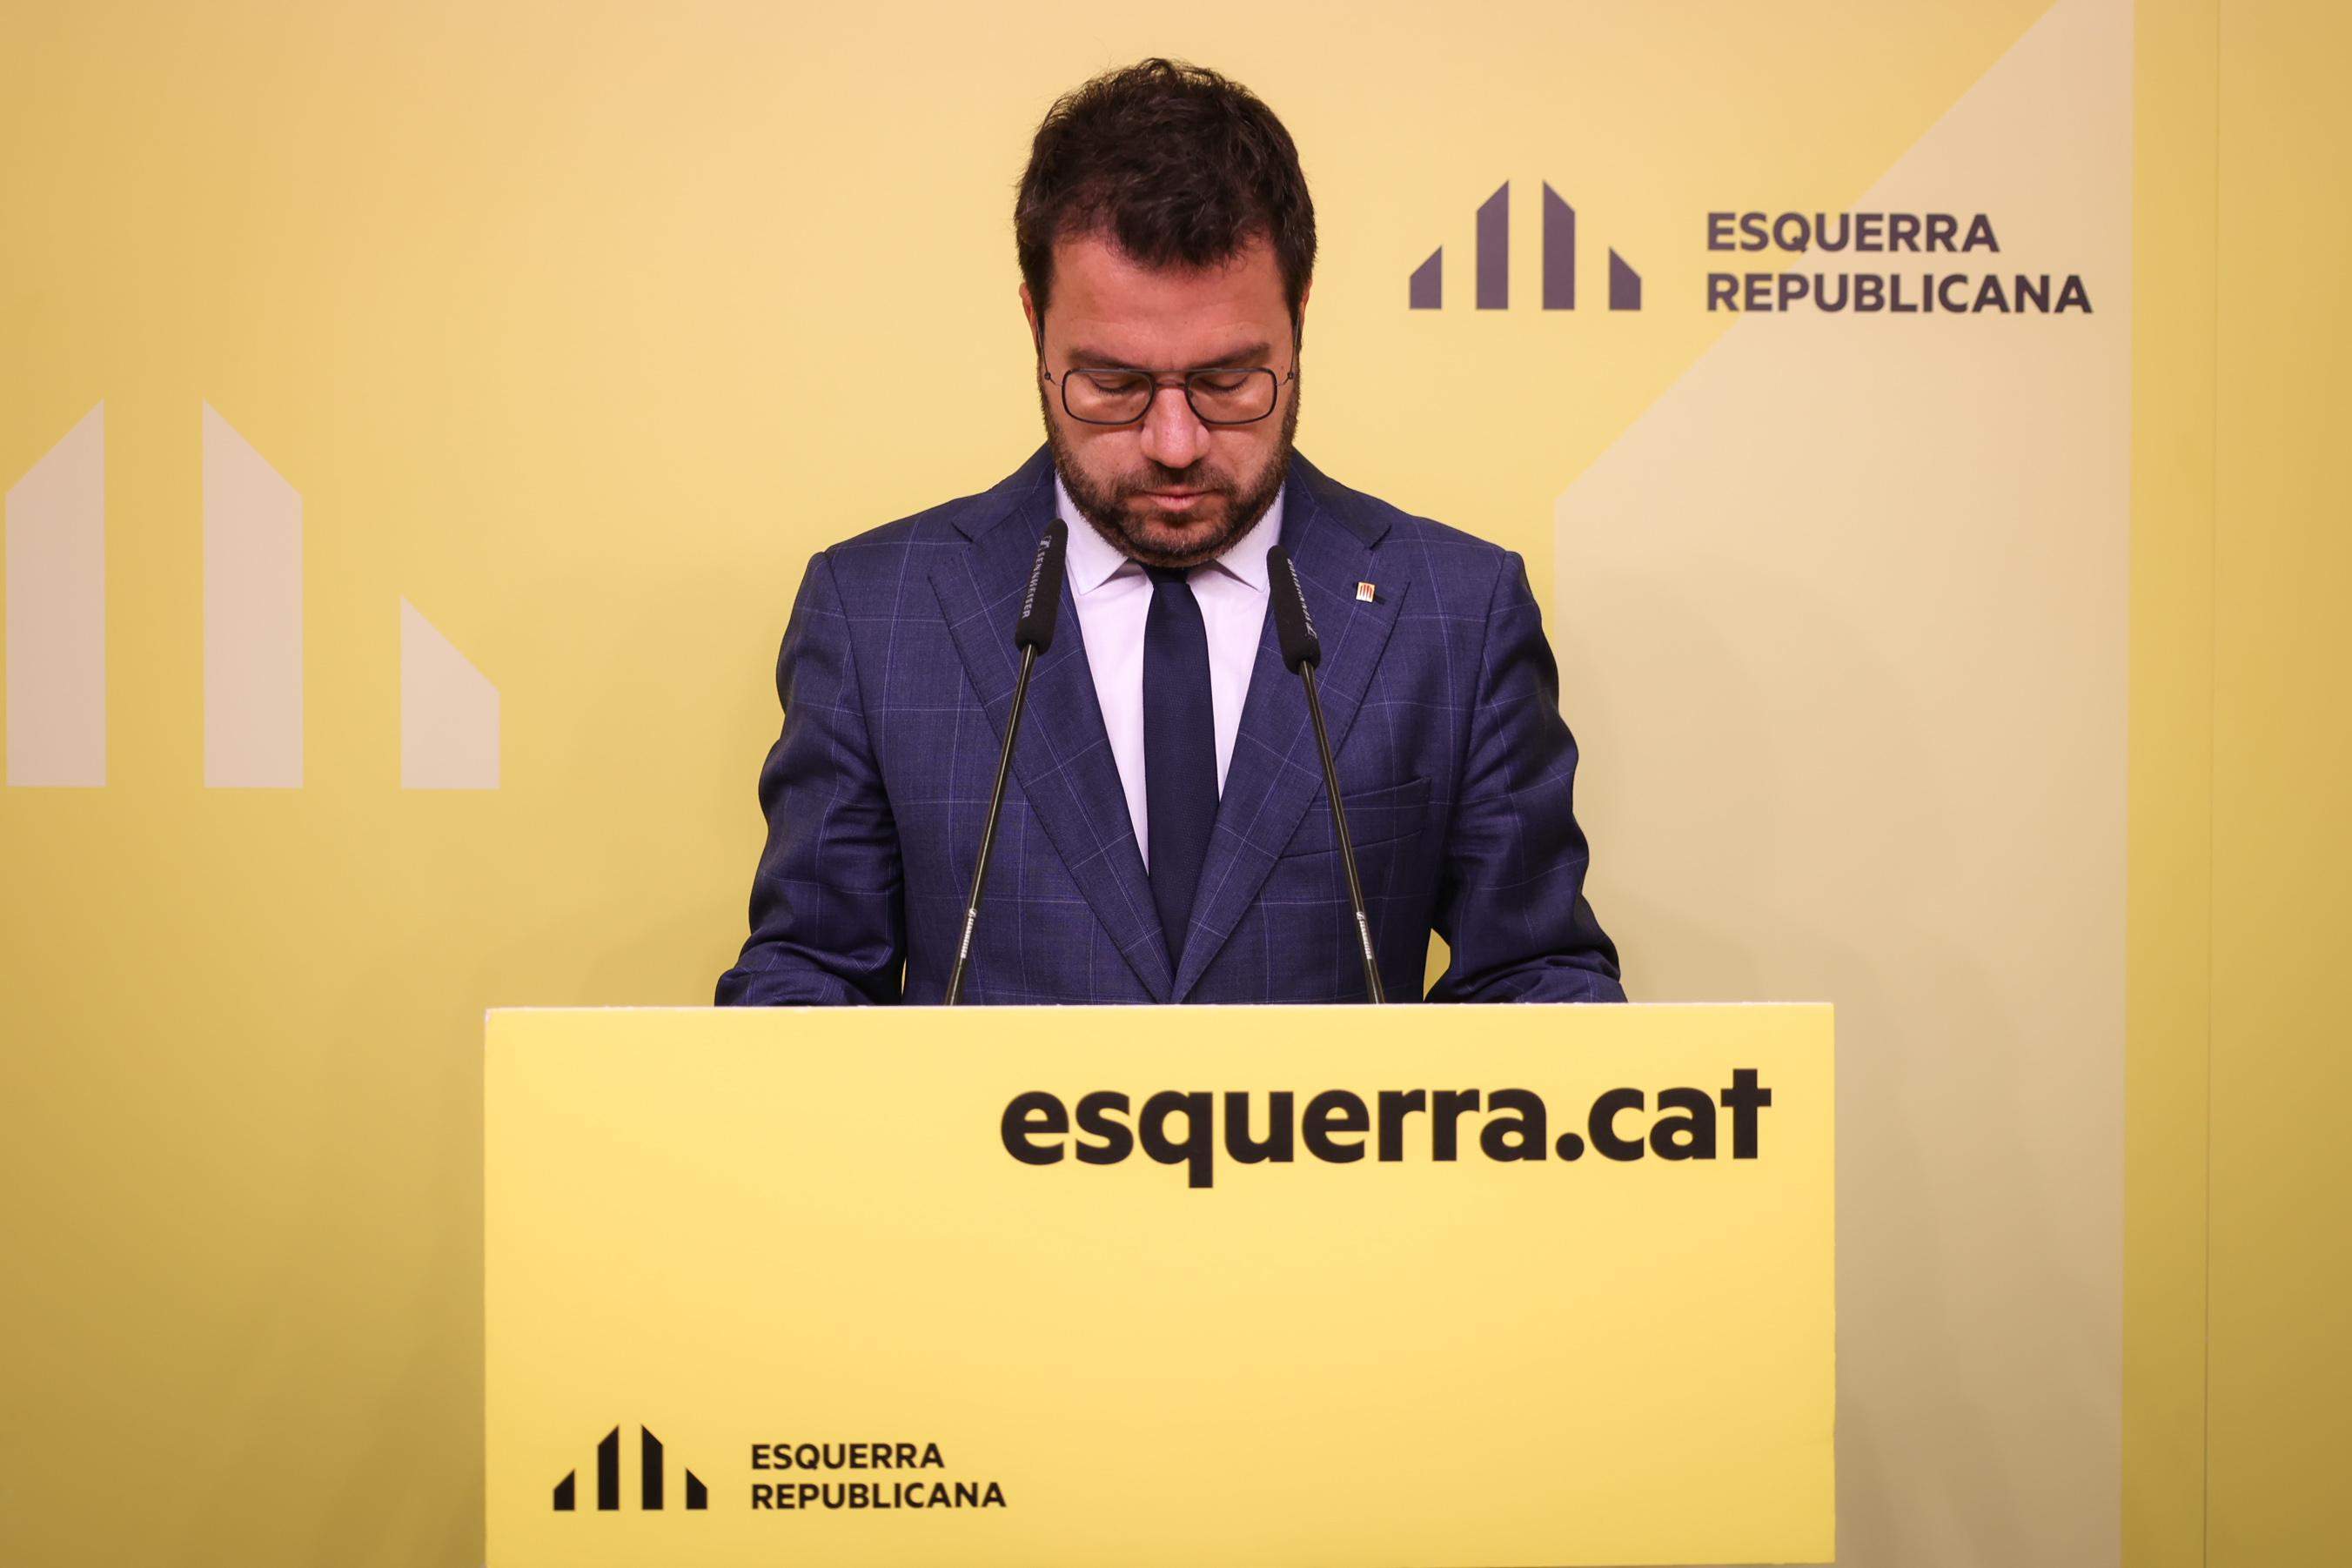 Aragonès renuncia a l'acta de diputat després del fracàs electoral d'ERC i deixa la primera línia